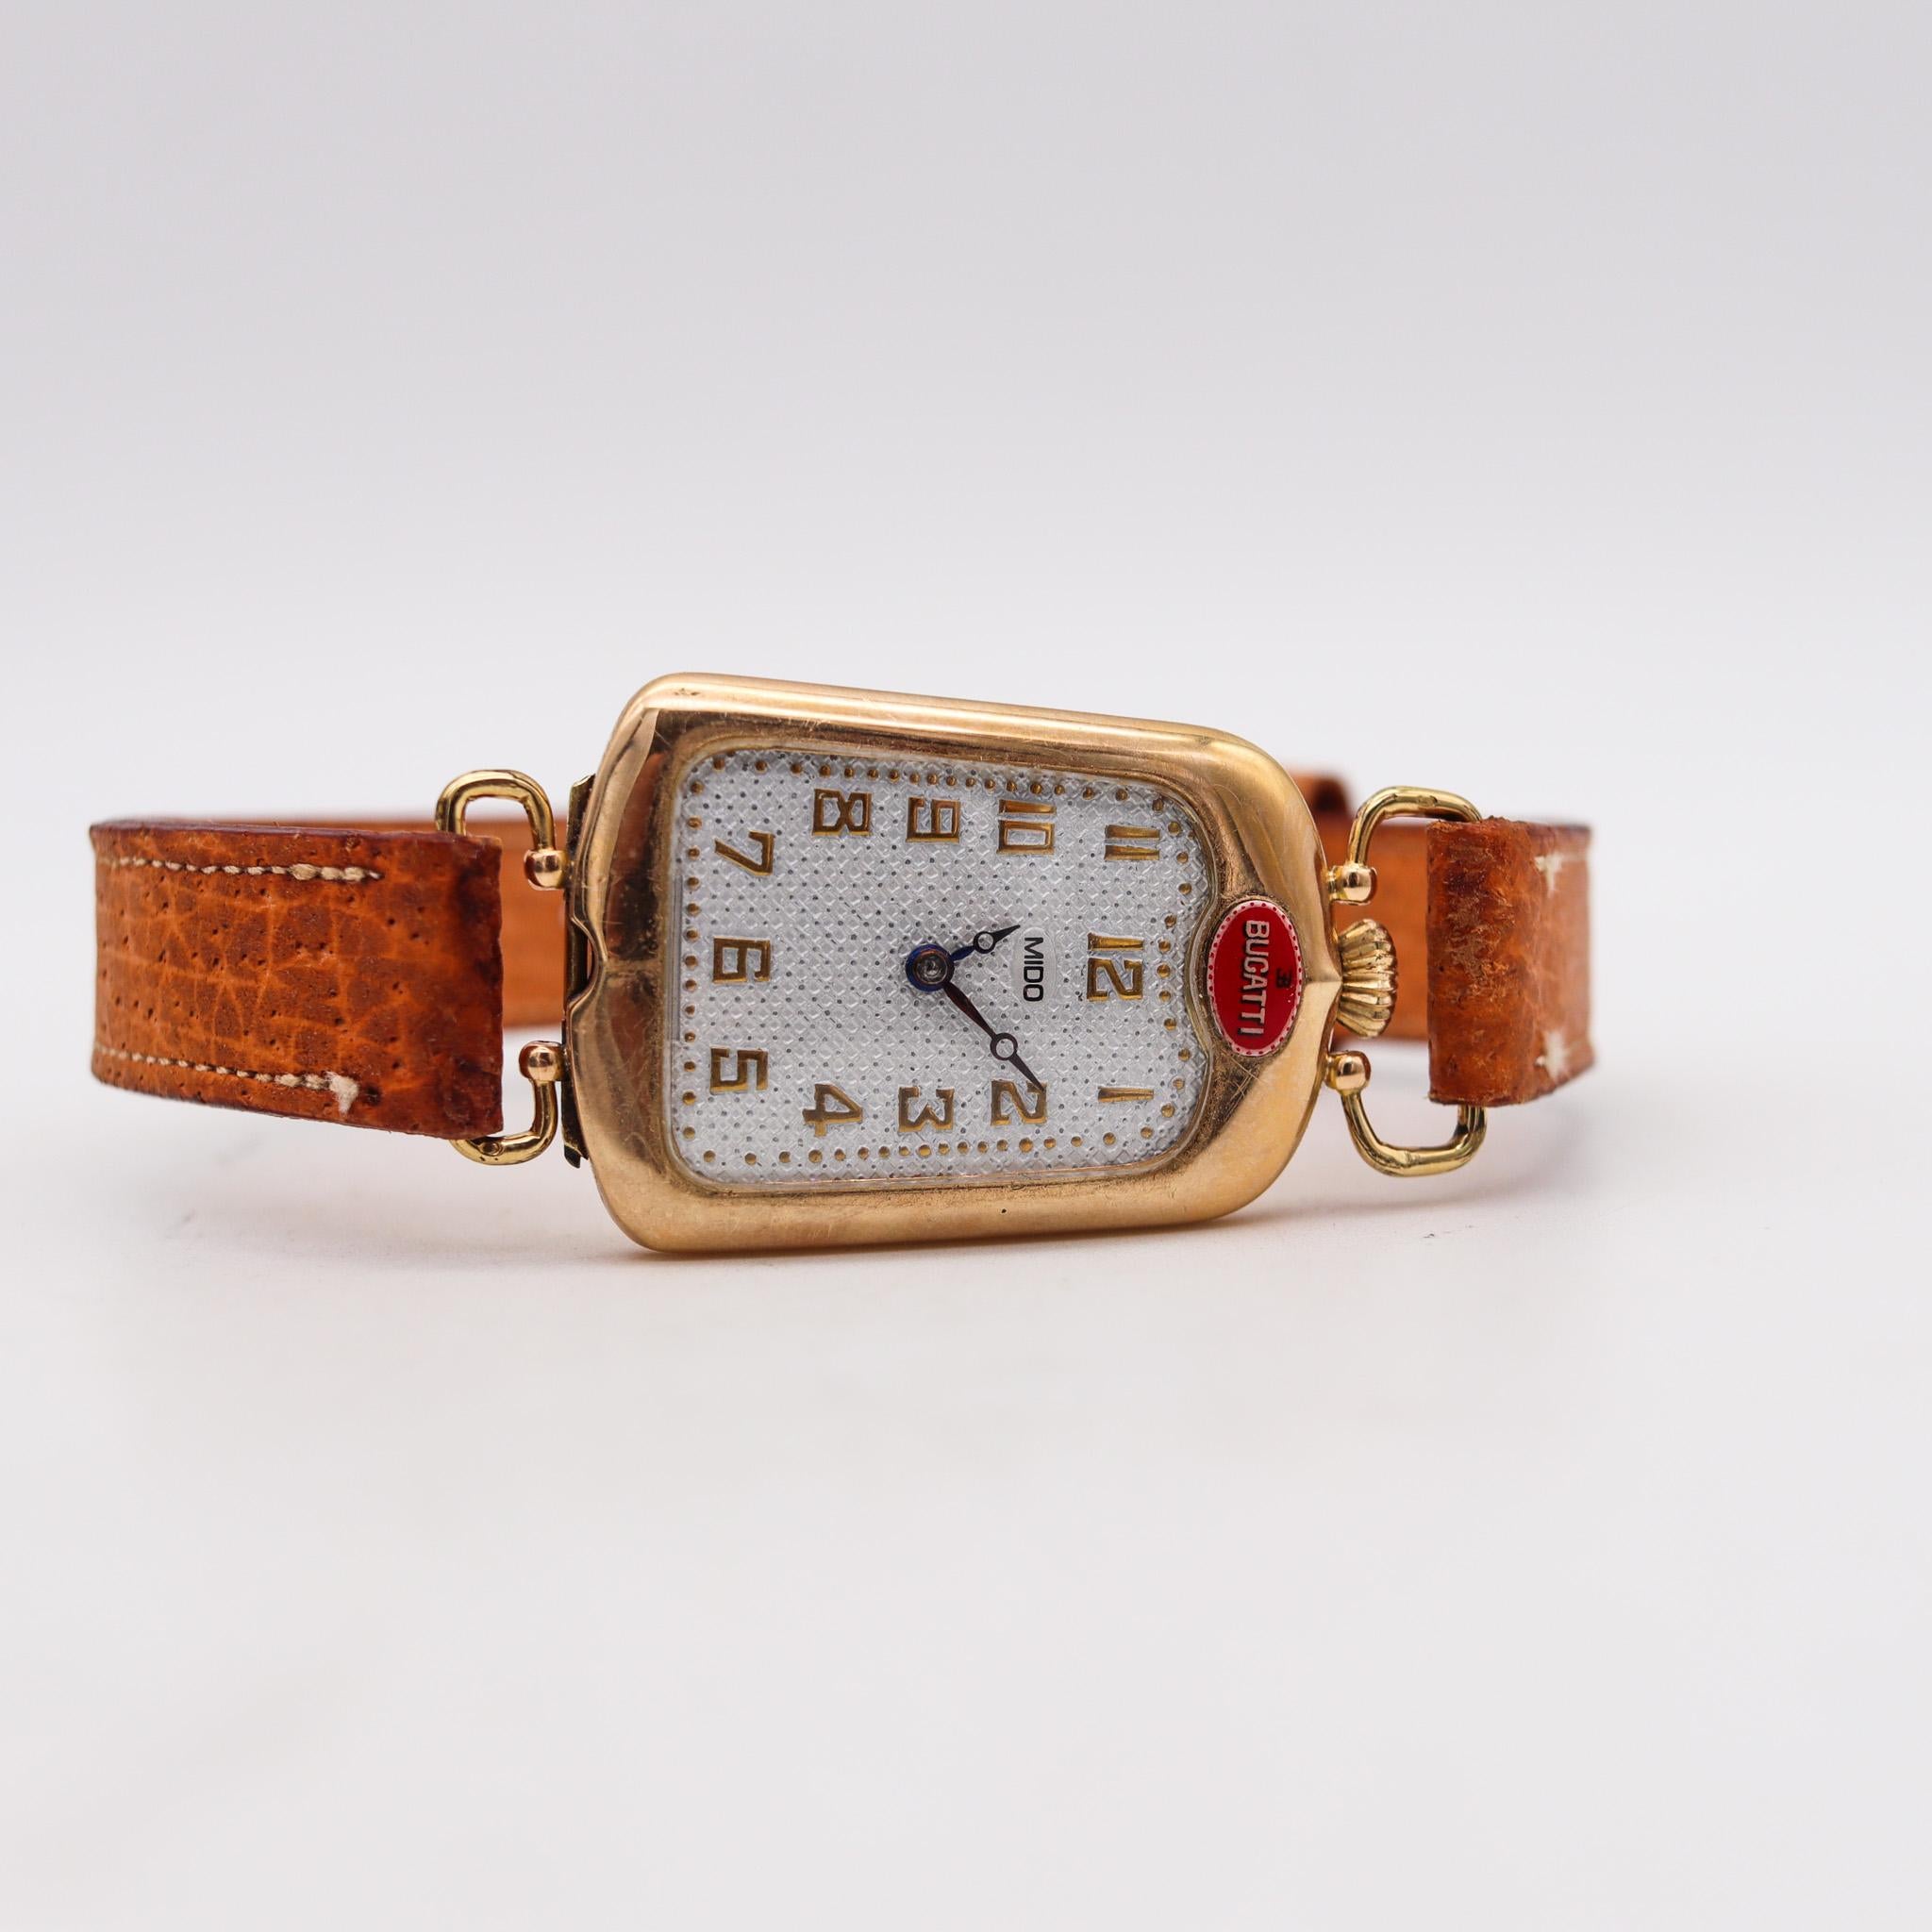 Von Bugatti entworfene Radiator-Armbanduhr.

Eine äußerst seltene und ungewöhnliche Deko-Armbanduhr, die in der Schweiz von Mido für die Firma Bugatti hergestellt wurde. Hergestellt in der Zeit des Art Déco in Form eines Autokühlergrills, um 1930.